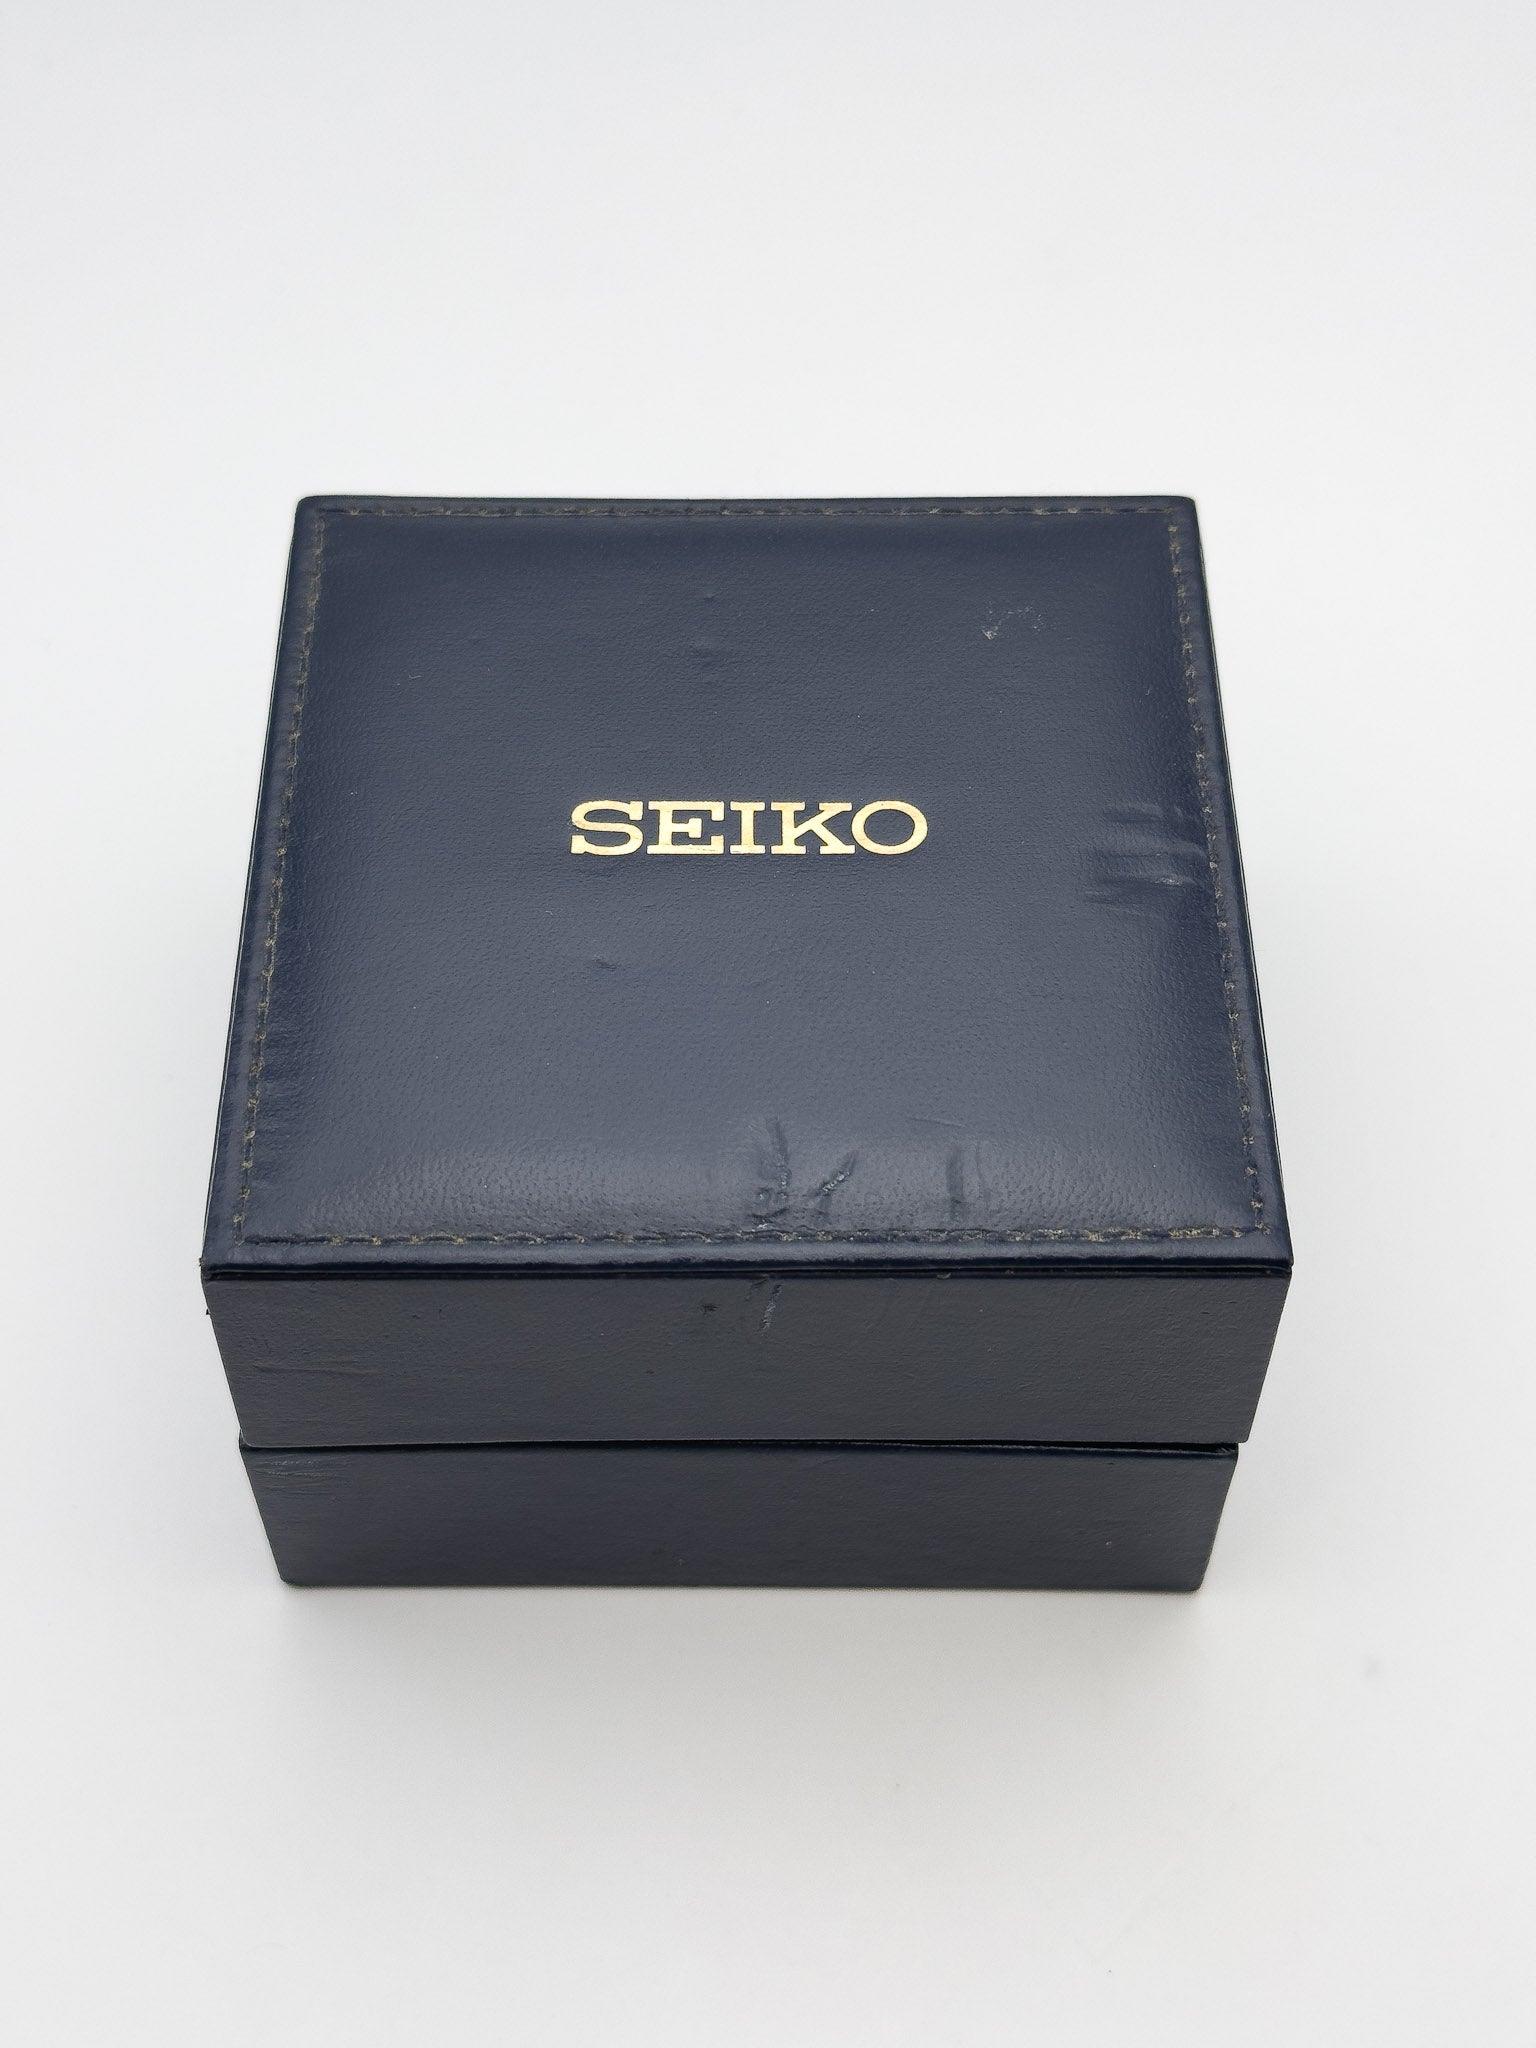 Seiko - Silverwave Black Daydate - Box - 1979 - Atelier Victor